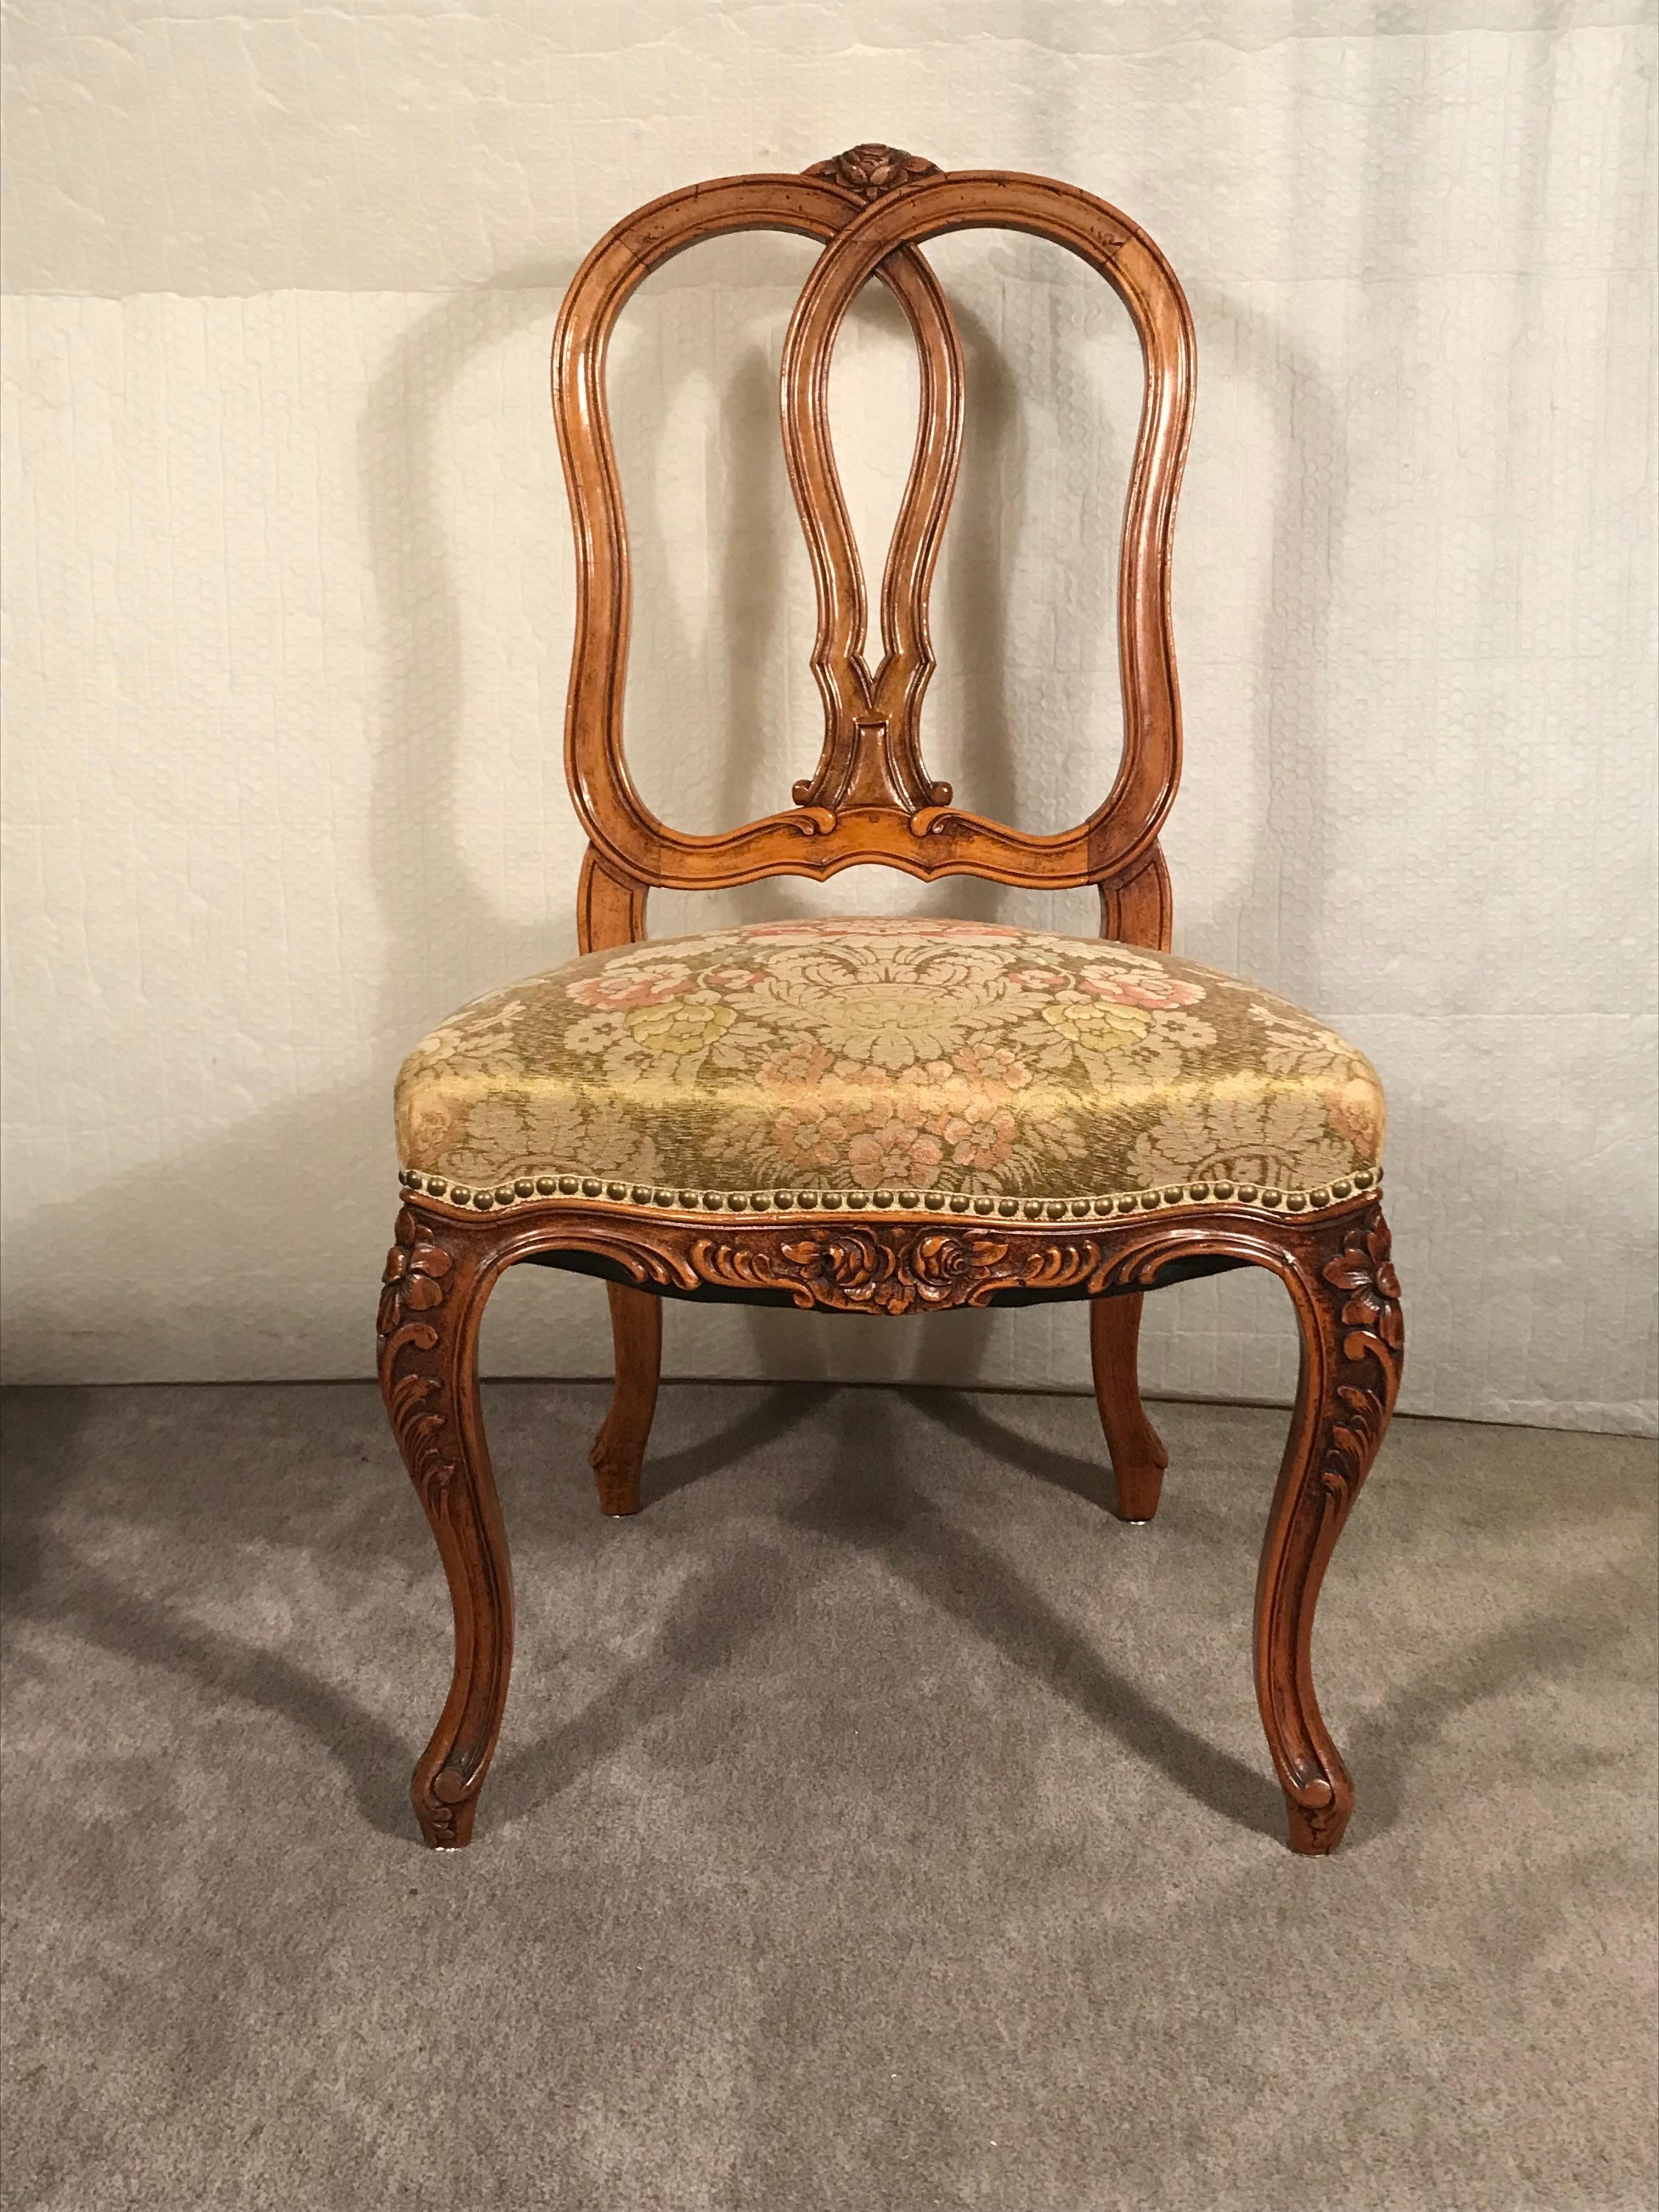 Dieses Set aus vier Stühlen im Barockstil hat ein wunderschönes handgeschnitztes Blumen- und Rocaille-Dekor. Die Stühle stammen aus dem 19. Jahrhundert und wurden um 1860-70 hergestellt. Sie sind im Originalzustand und wurden mit einem geblümten